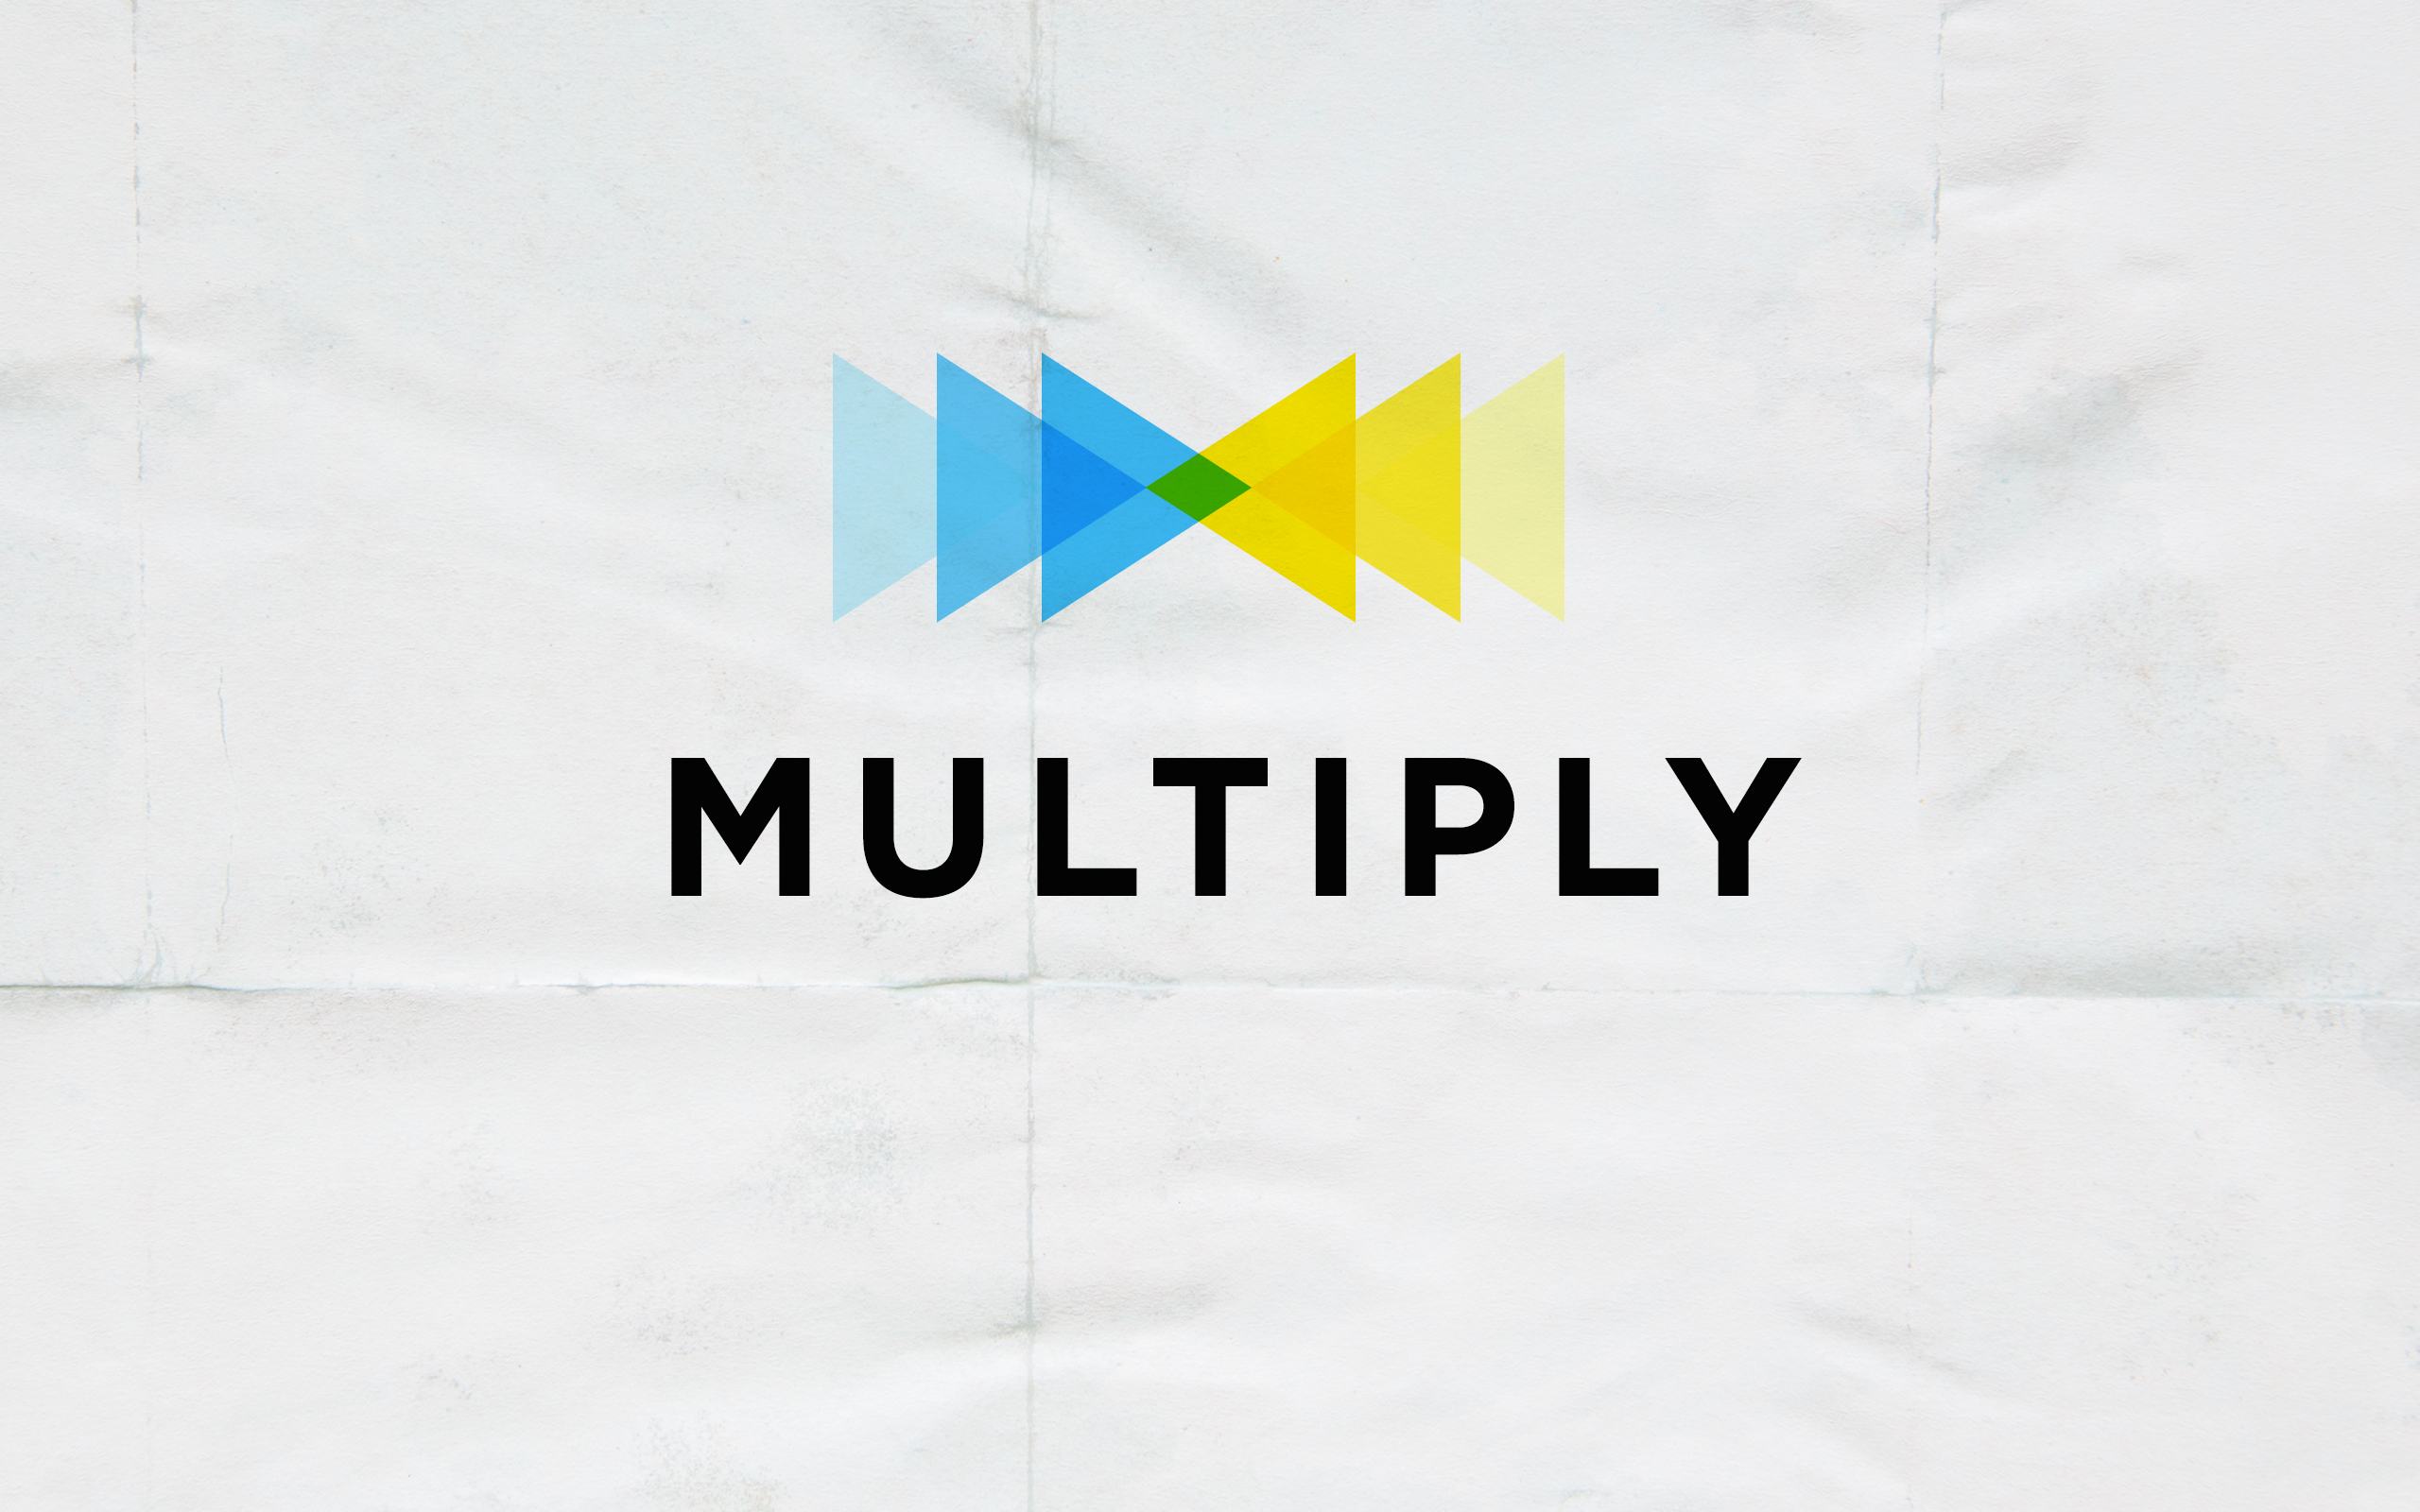 Multiply – The Gospel